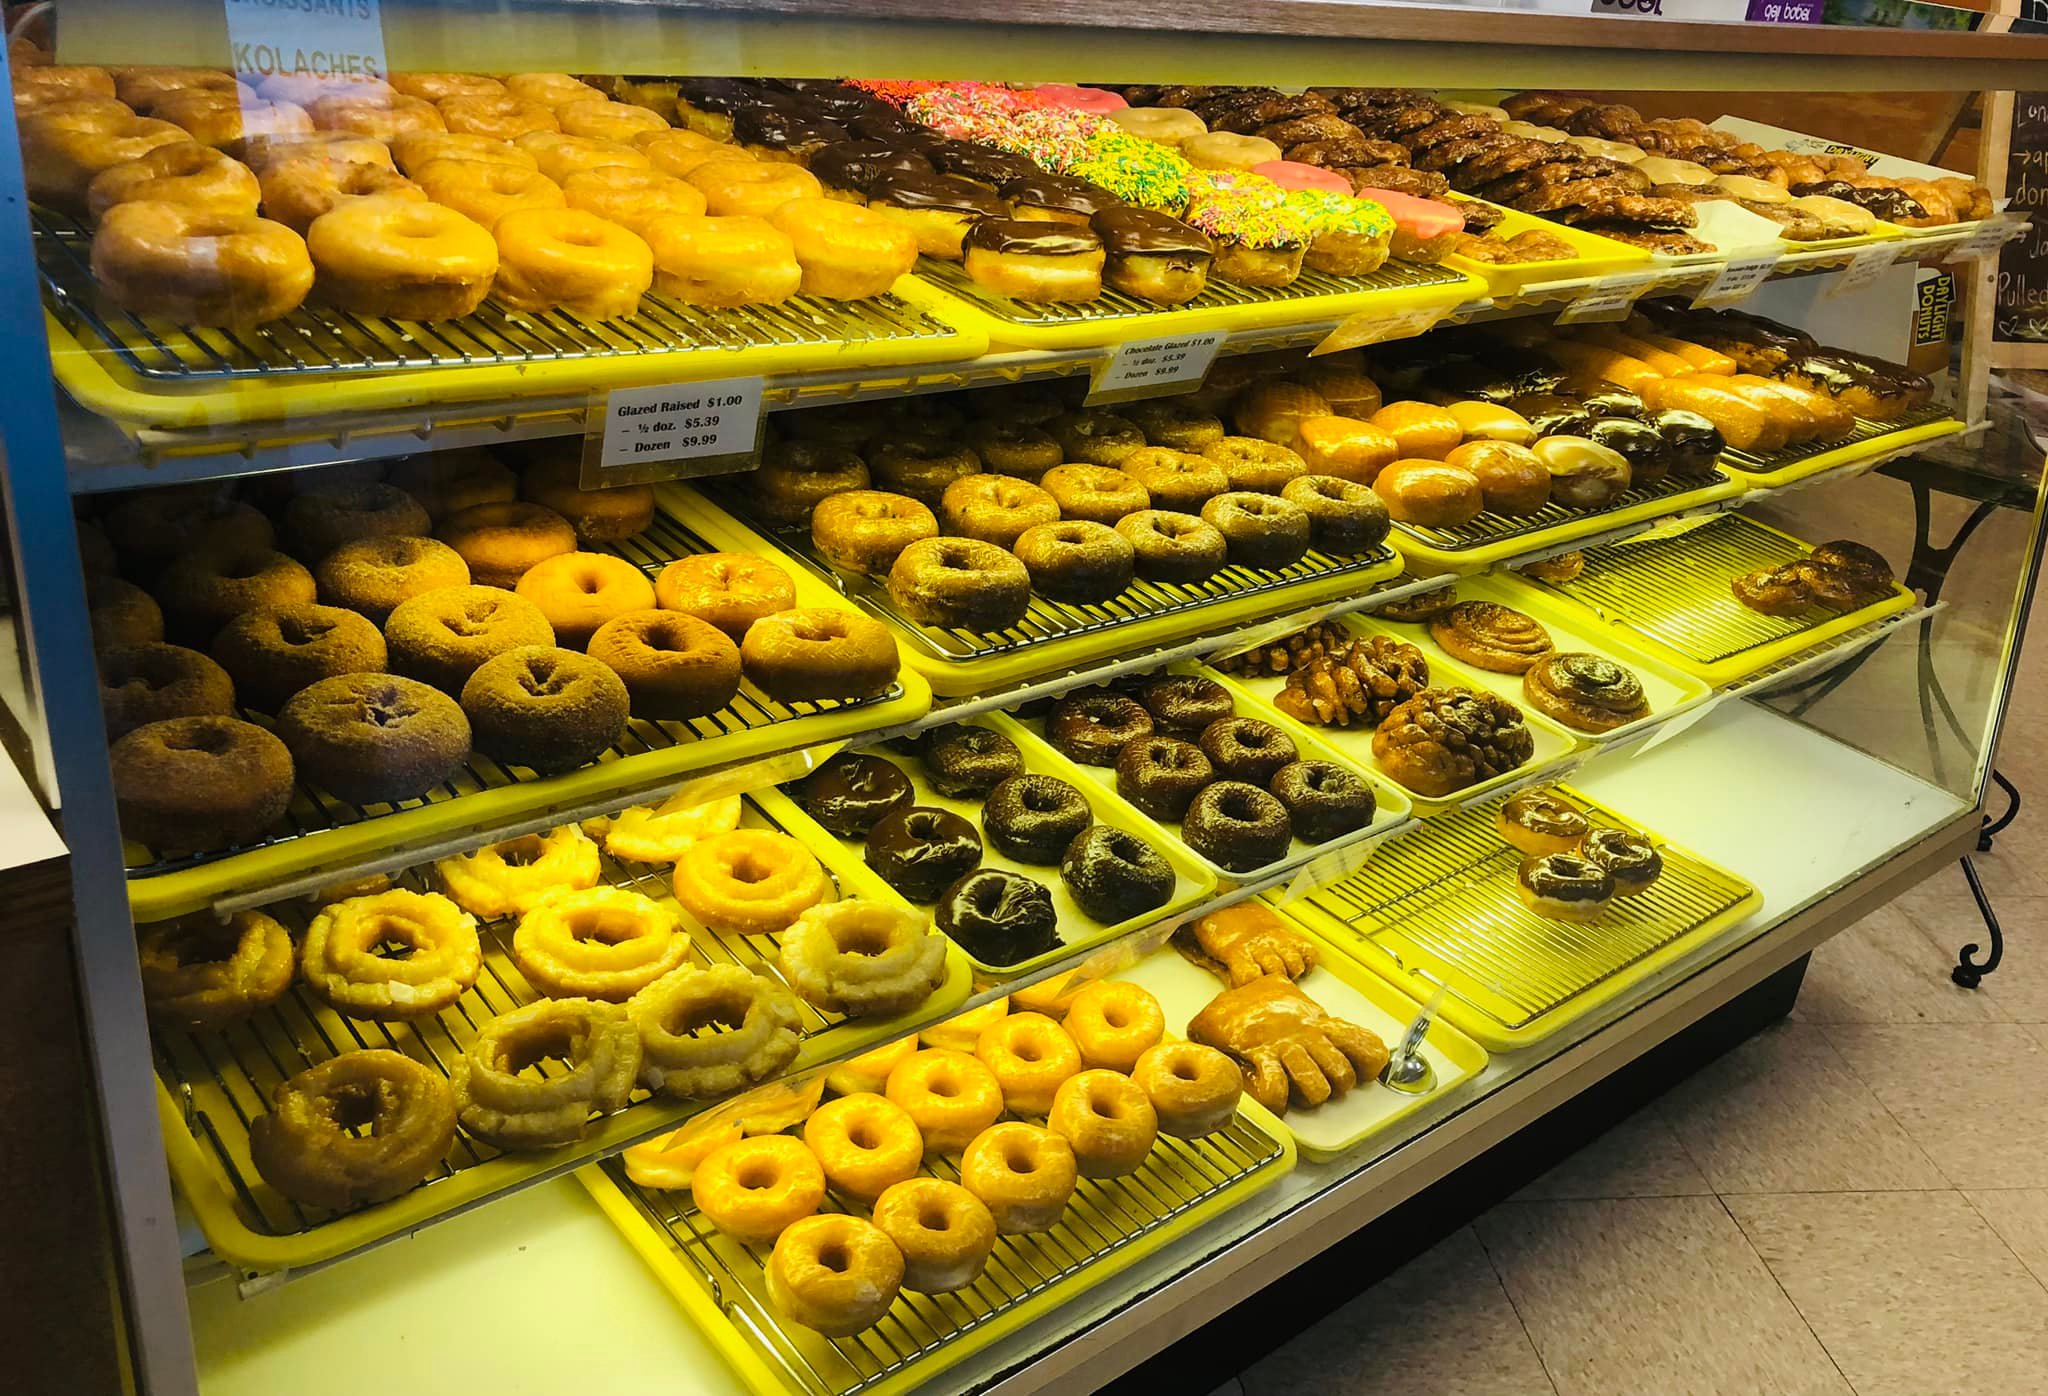 Display full of donut varieties